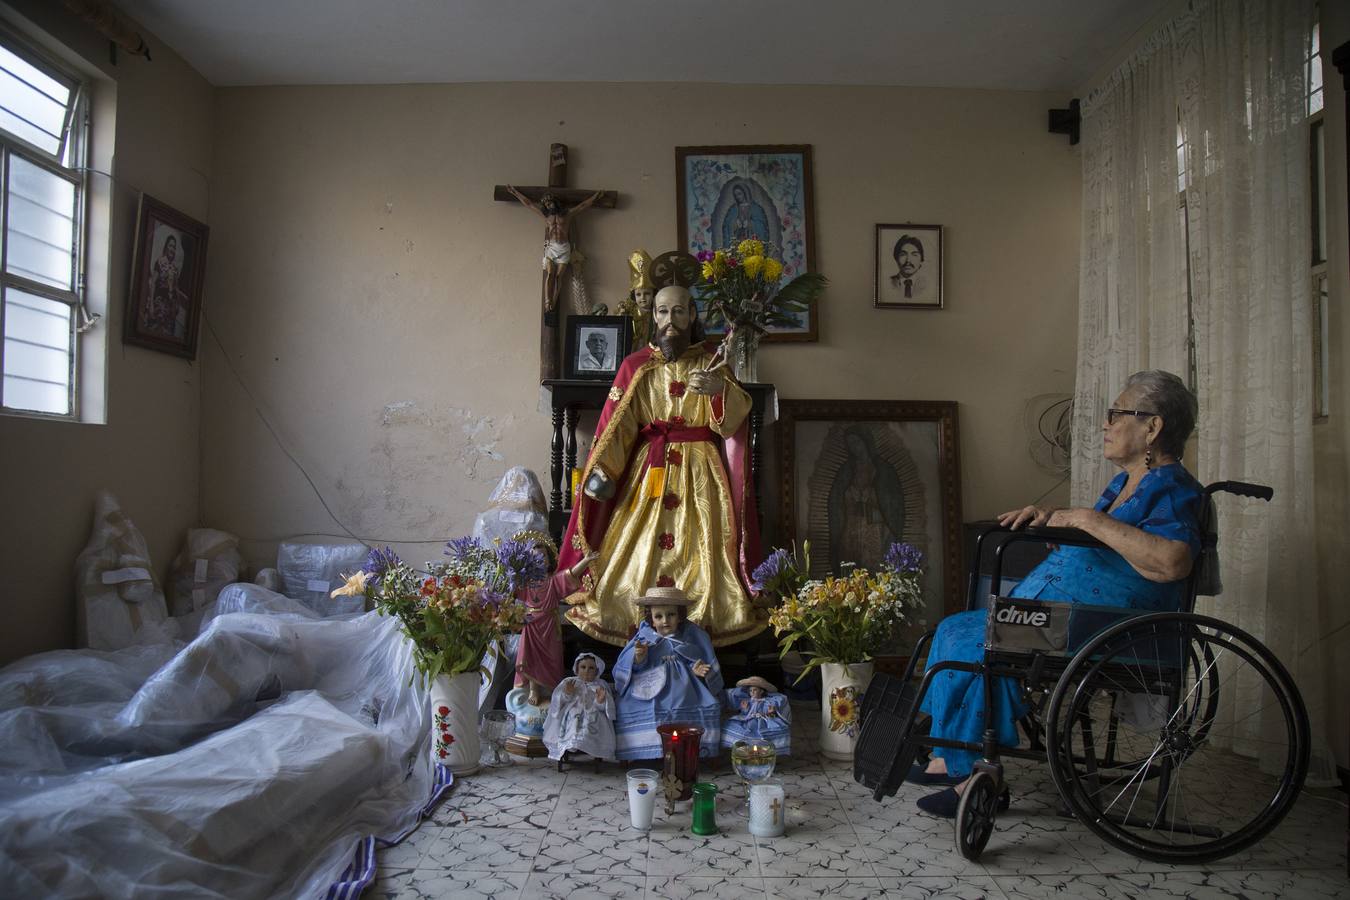 El estado de Oaxaca (México) está inmerso en un proceso de restauración de las iglesias y otros bienes históricos y culturales dañados por los sismos de septiembre, con lo que se pretende ayudar a recuperar parte de la "identidad" de los pueblos damnificados